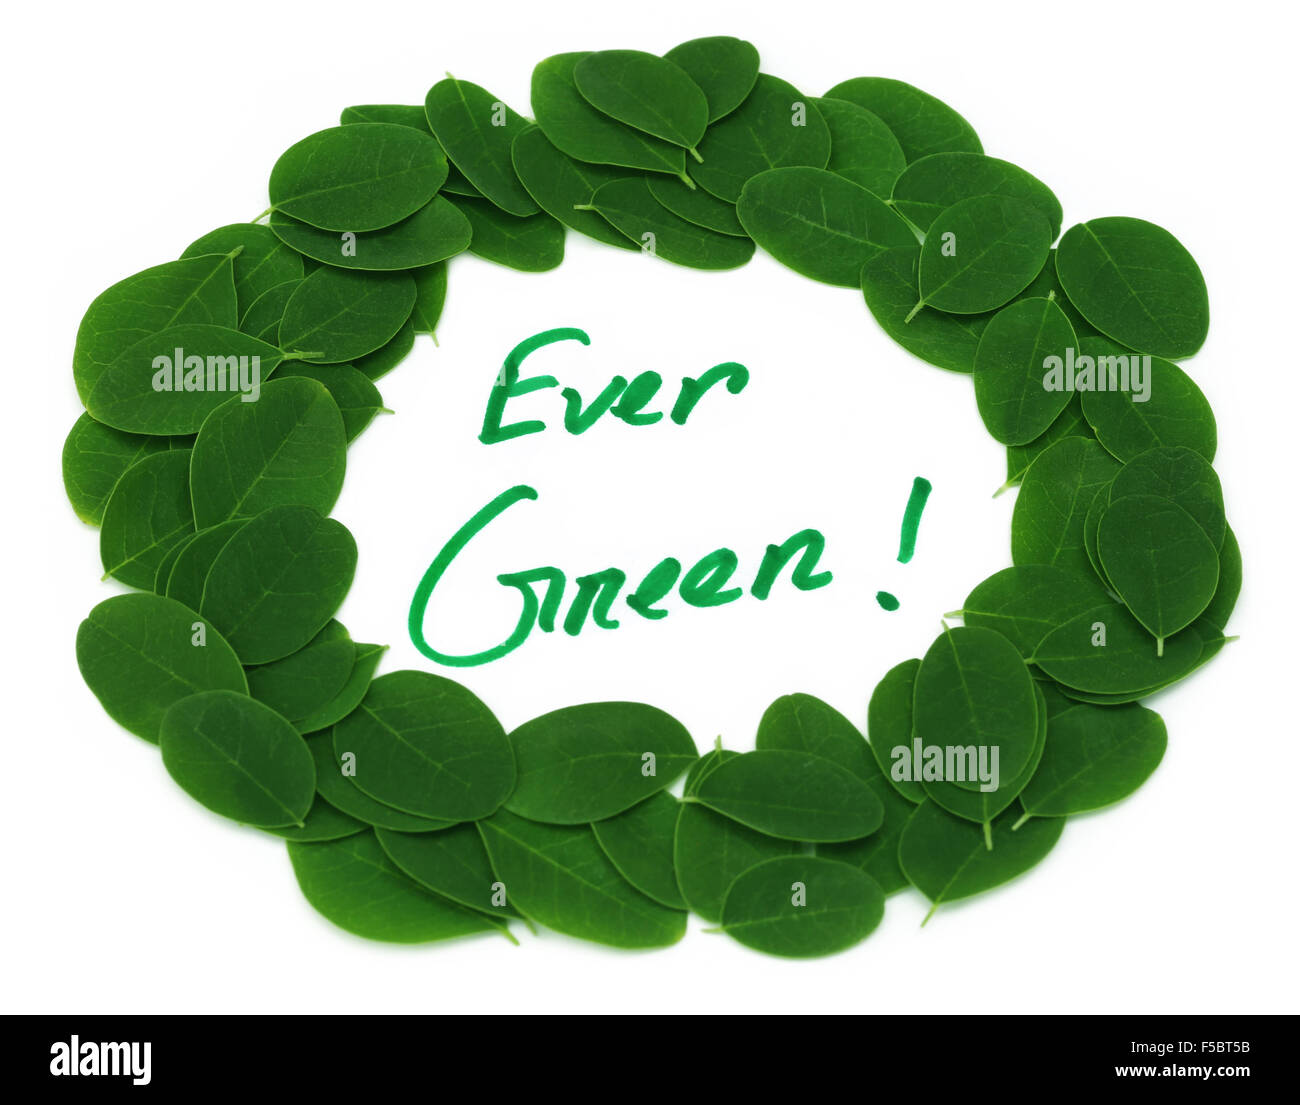 Immer Blätter grüne geschrieben in Moringa Frame auf weißem Hintergrund Stockfoto